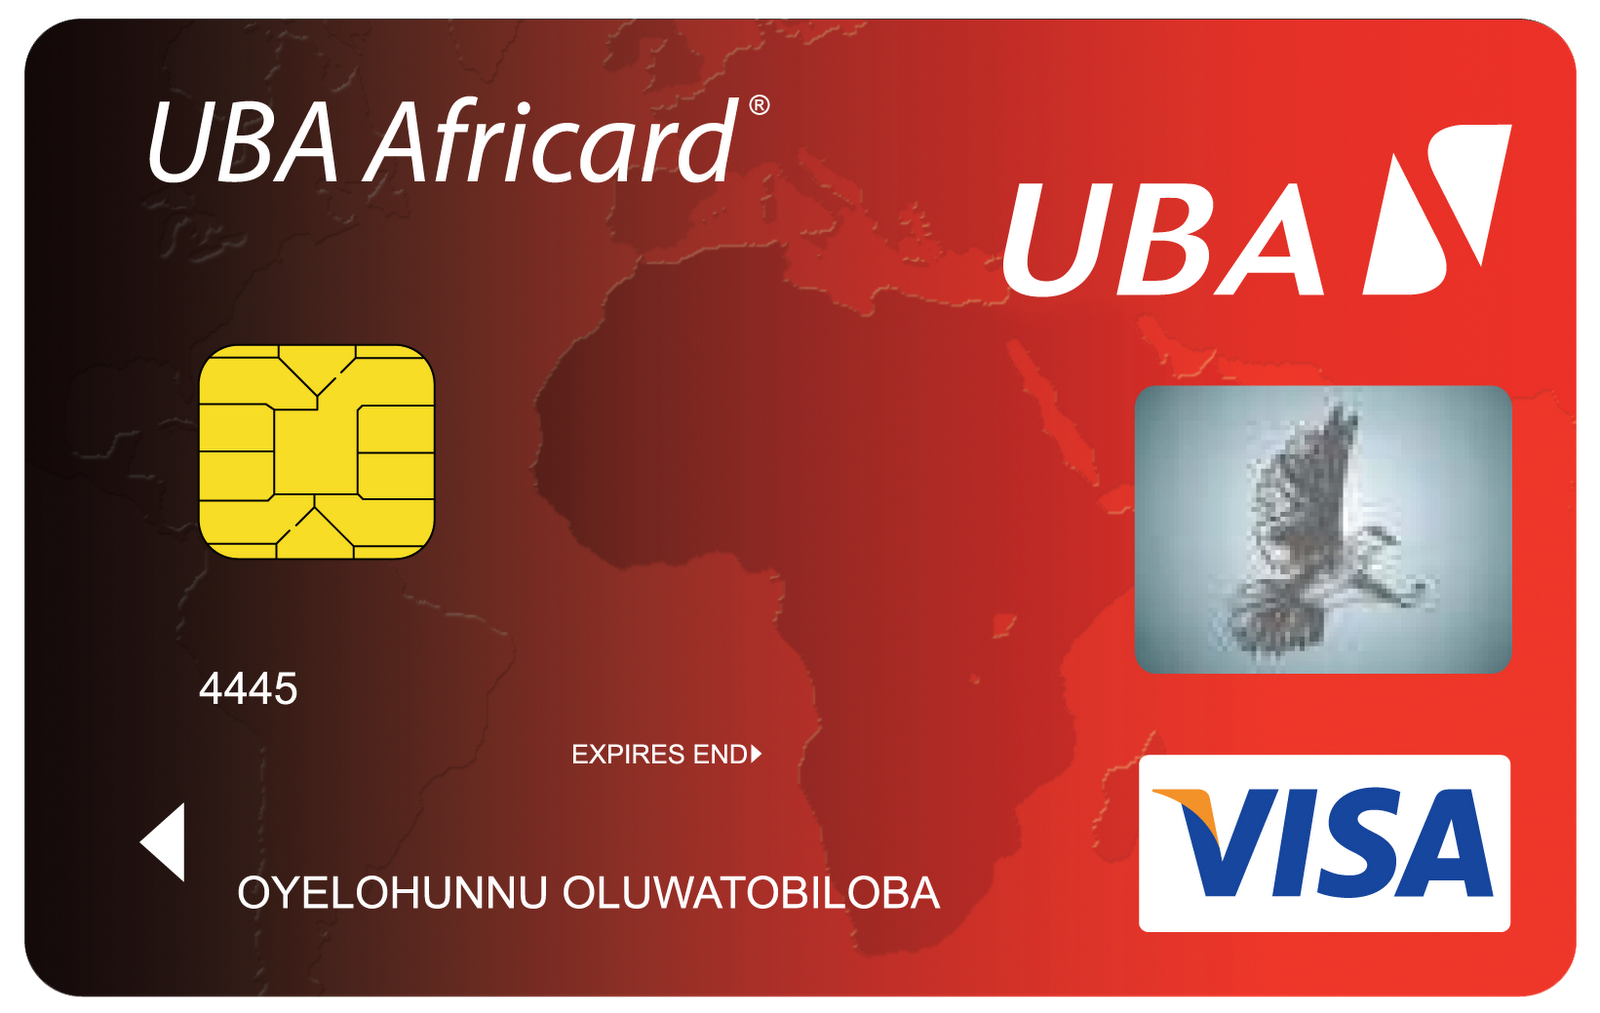 Visa login. Банк UBA Africard. Карта UBA. Карта виза. ATM visa Card.